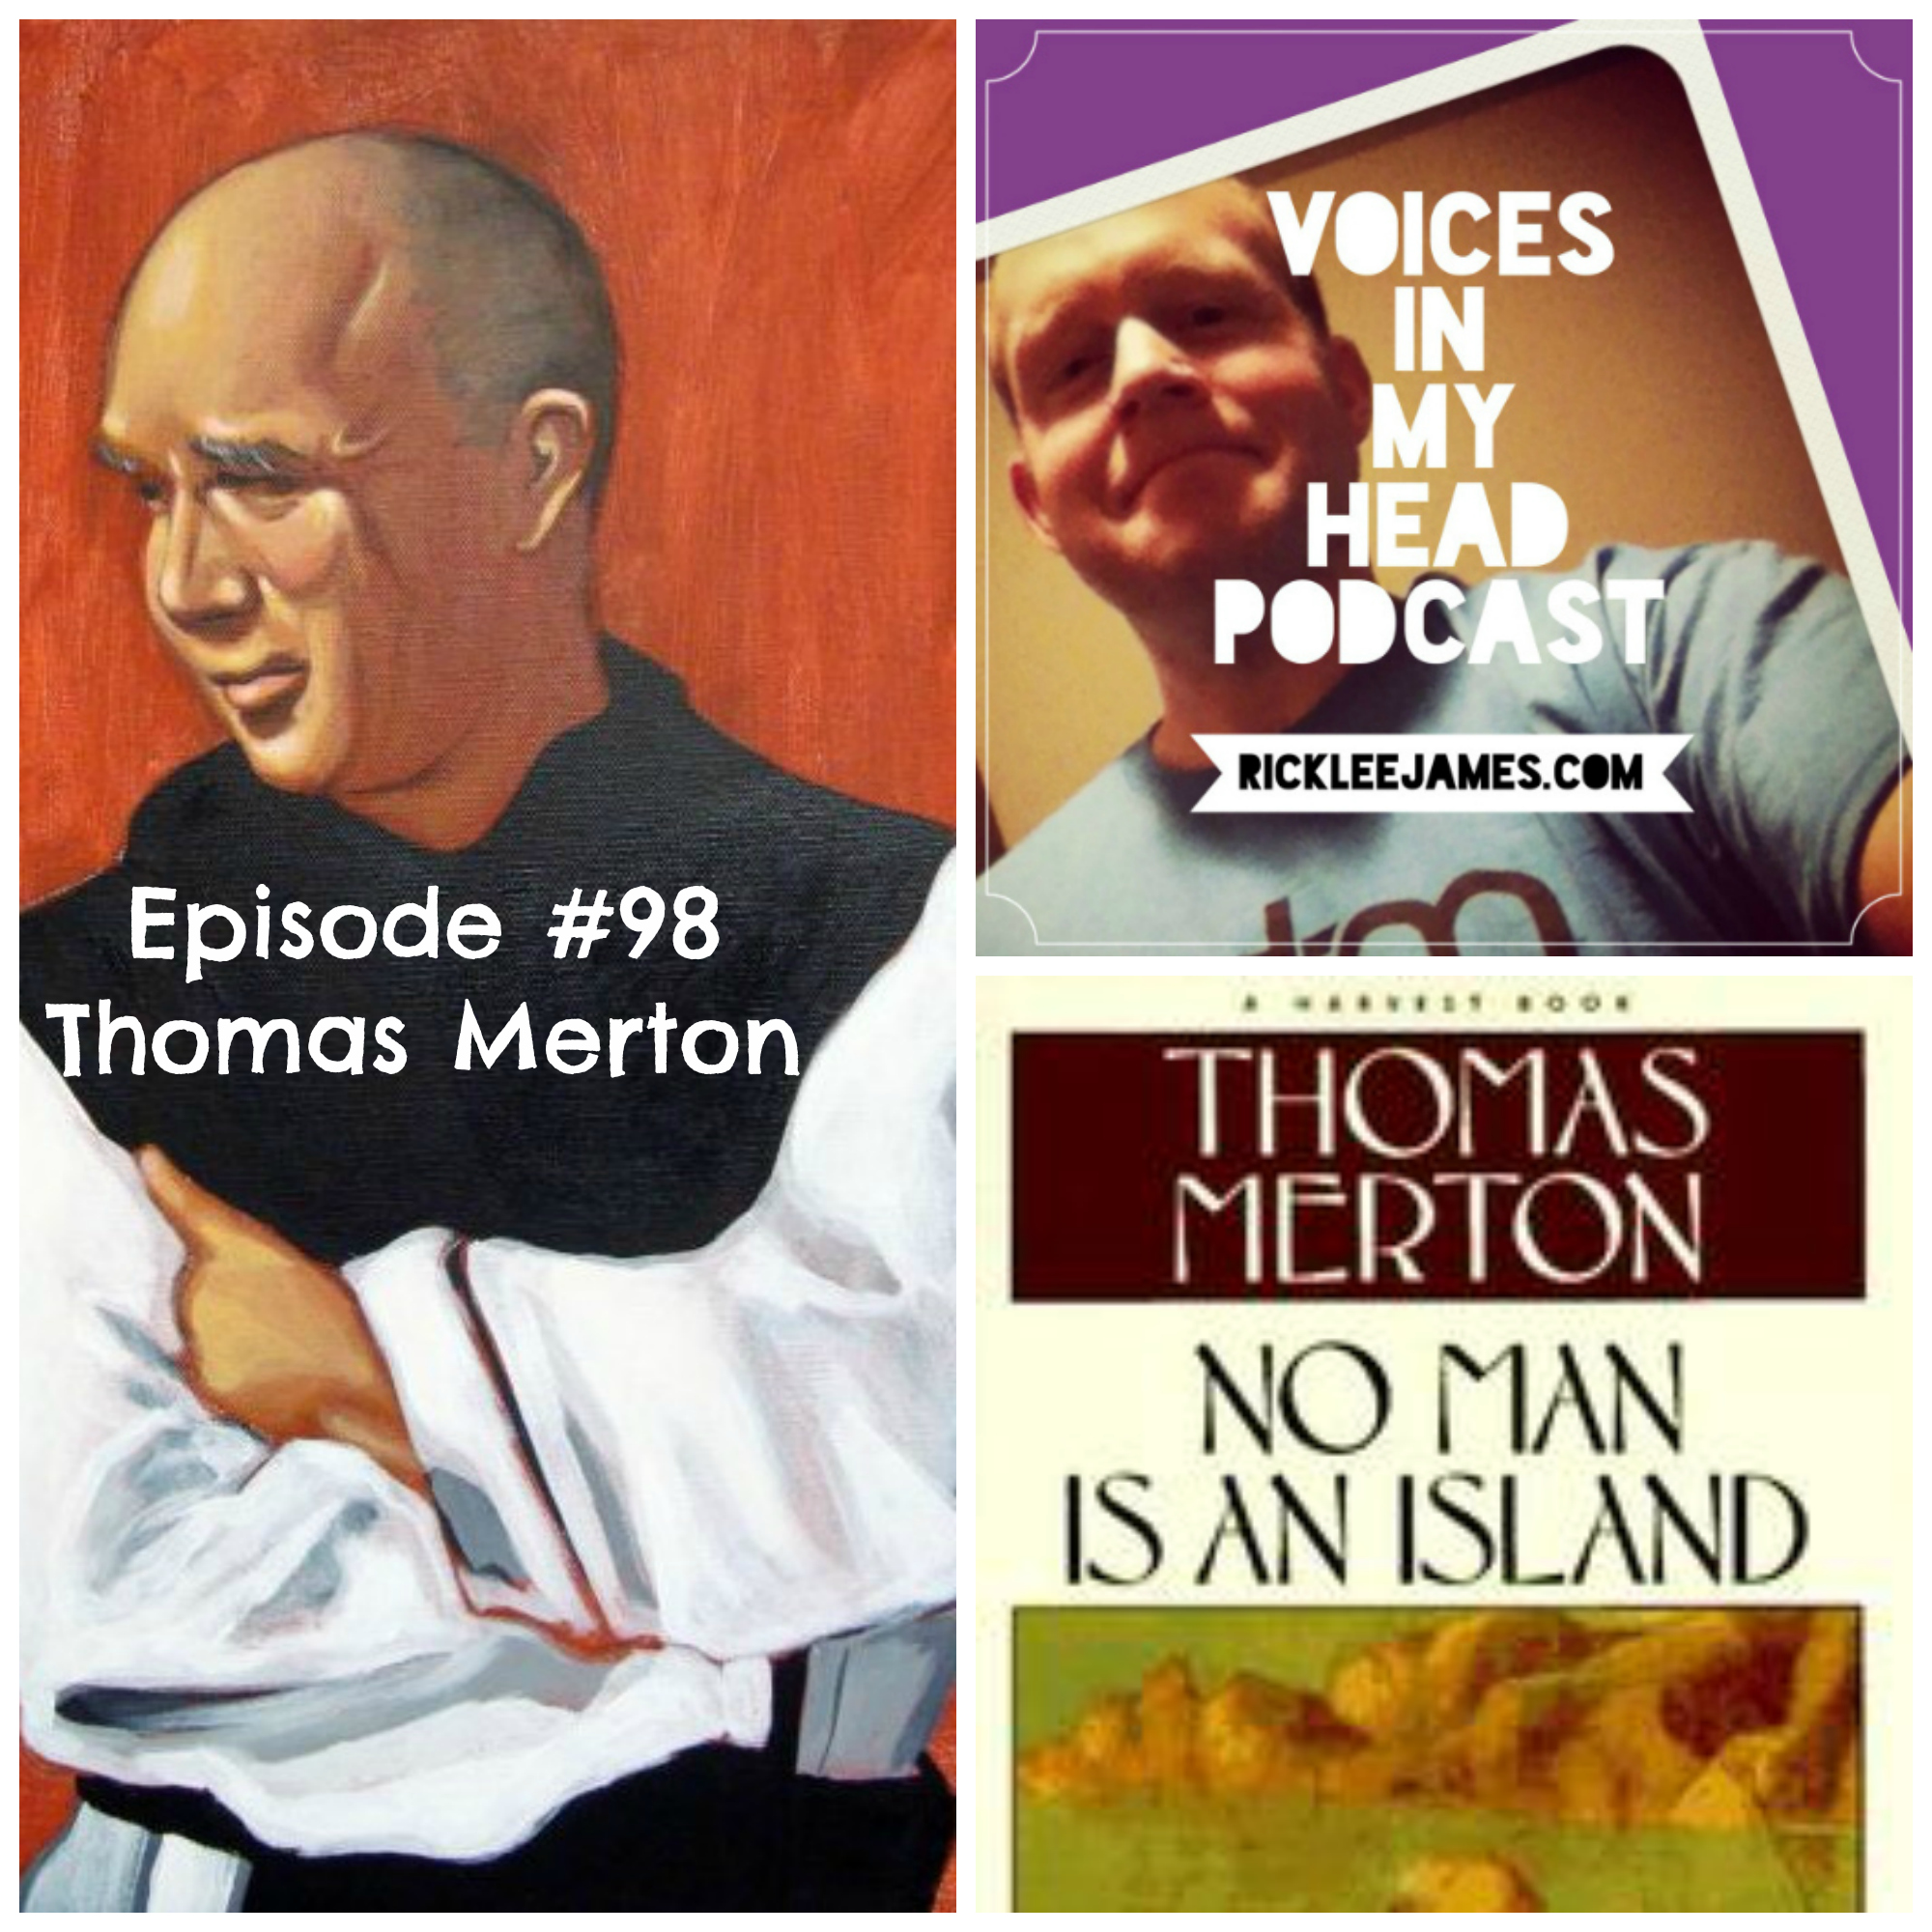 Podcast Episode #98_Thomas Merton